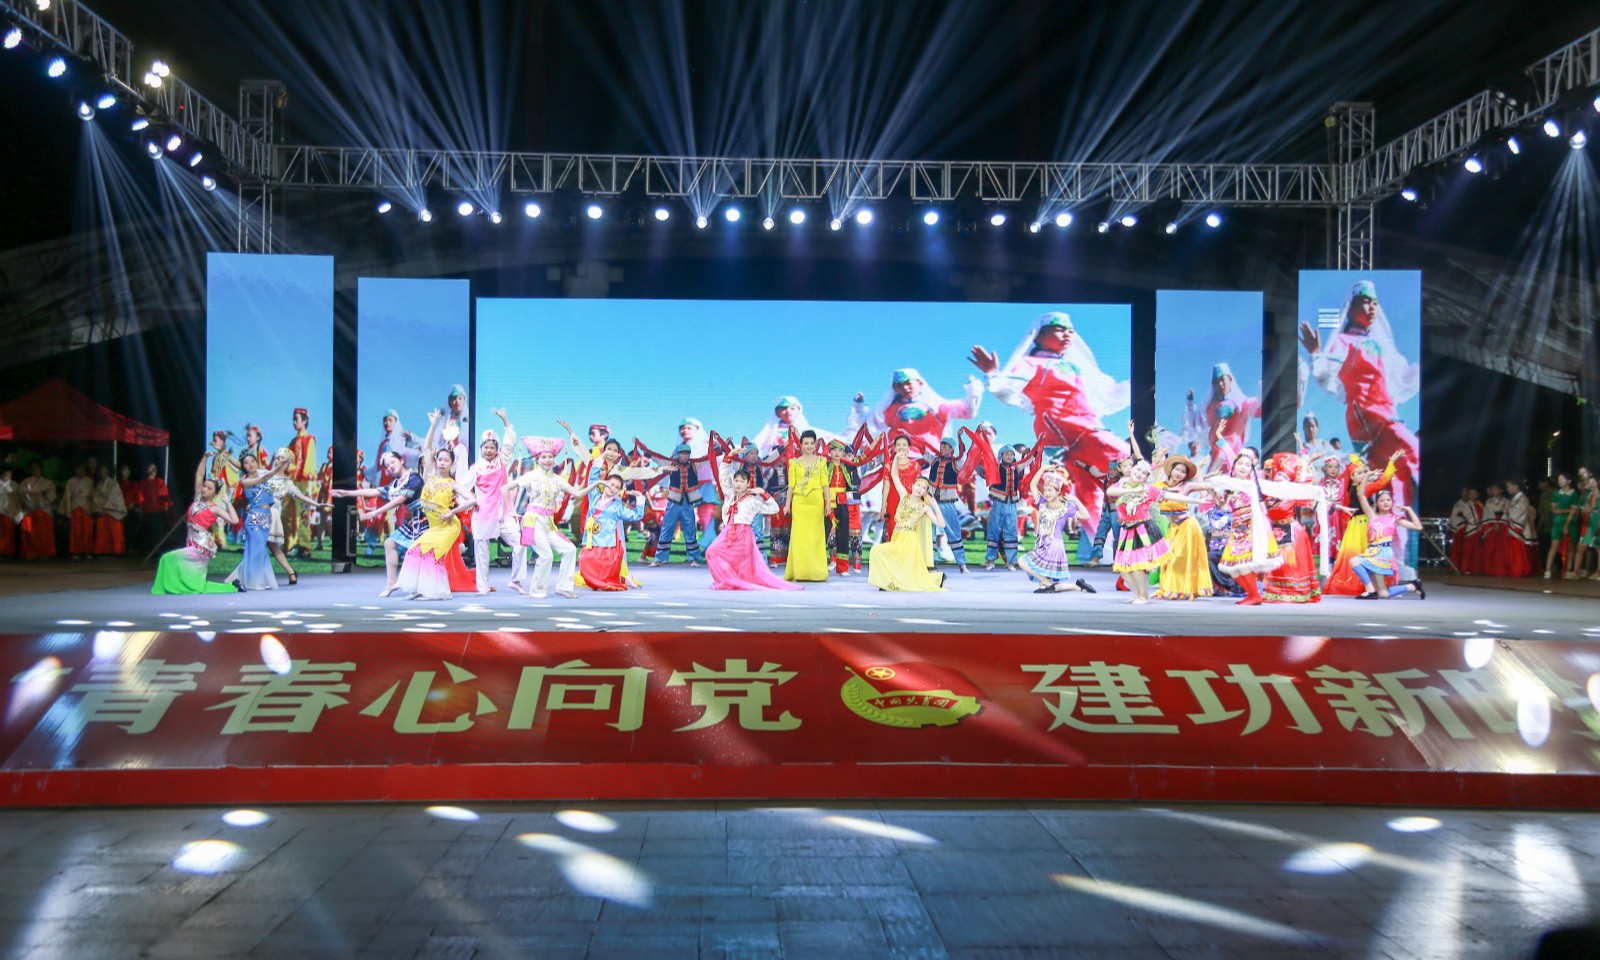 桂平市艺术学校参与2019年纪念五四运动100周年主题颁奖晚会表演